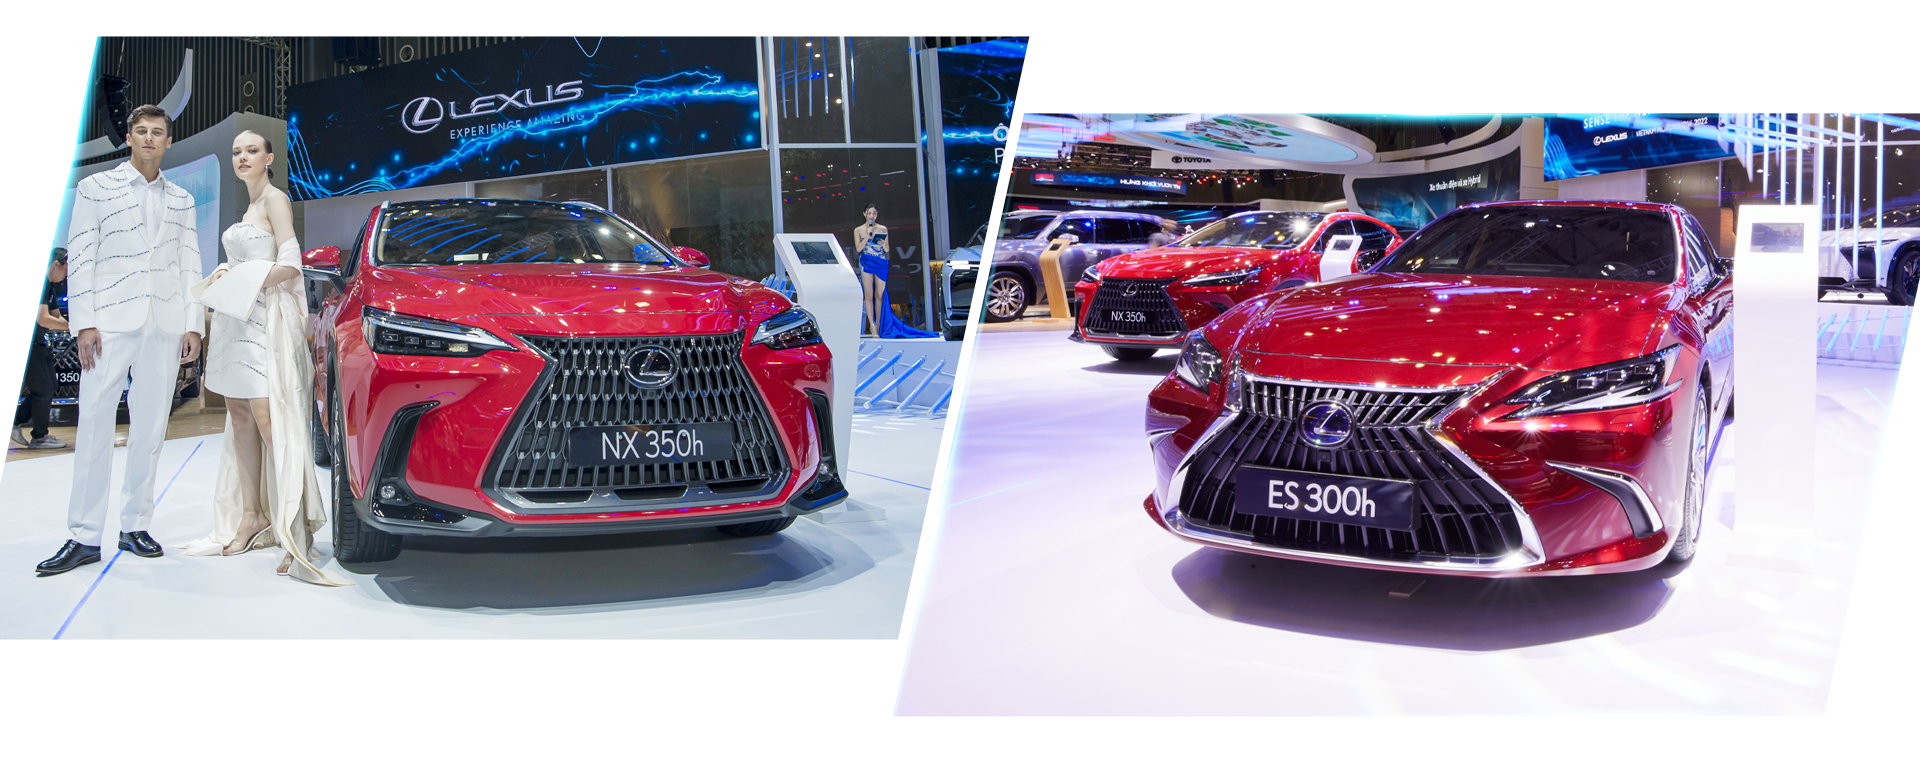 Dấu ấn Lexus tại VMS 2022 Khi nghệ thuật đương đại kết hợp với công nghệ tương lai - 7